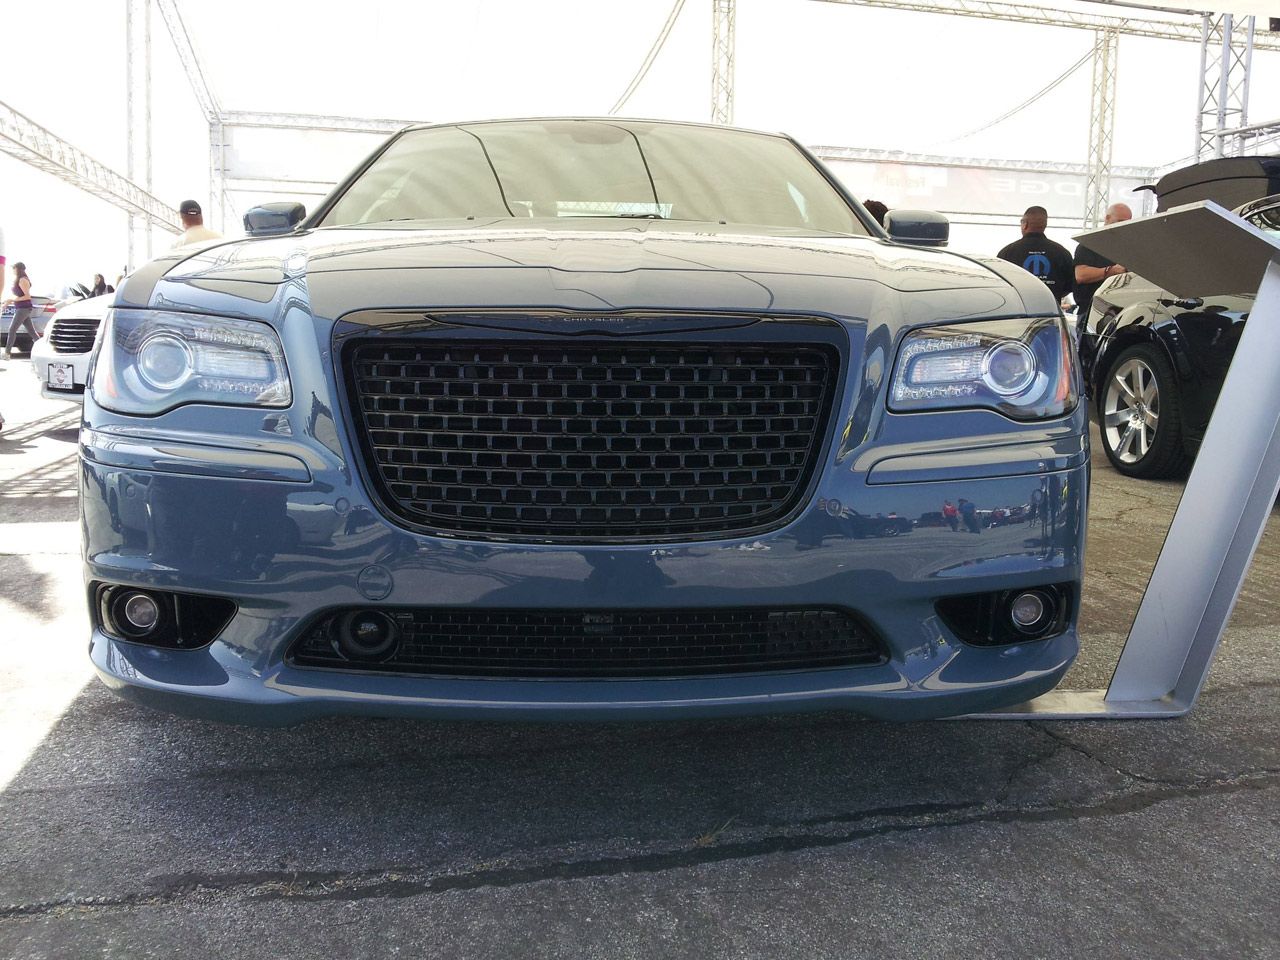 2013 Chrysler 300 SRT Concept